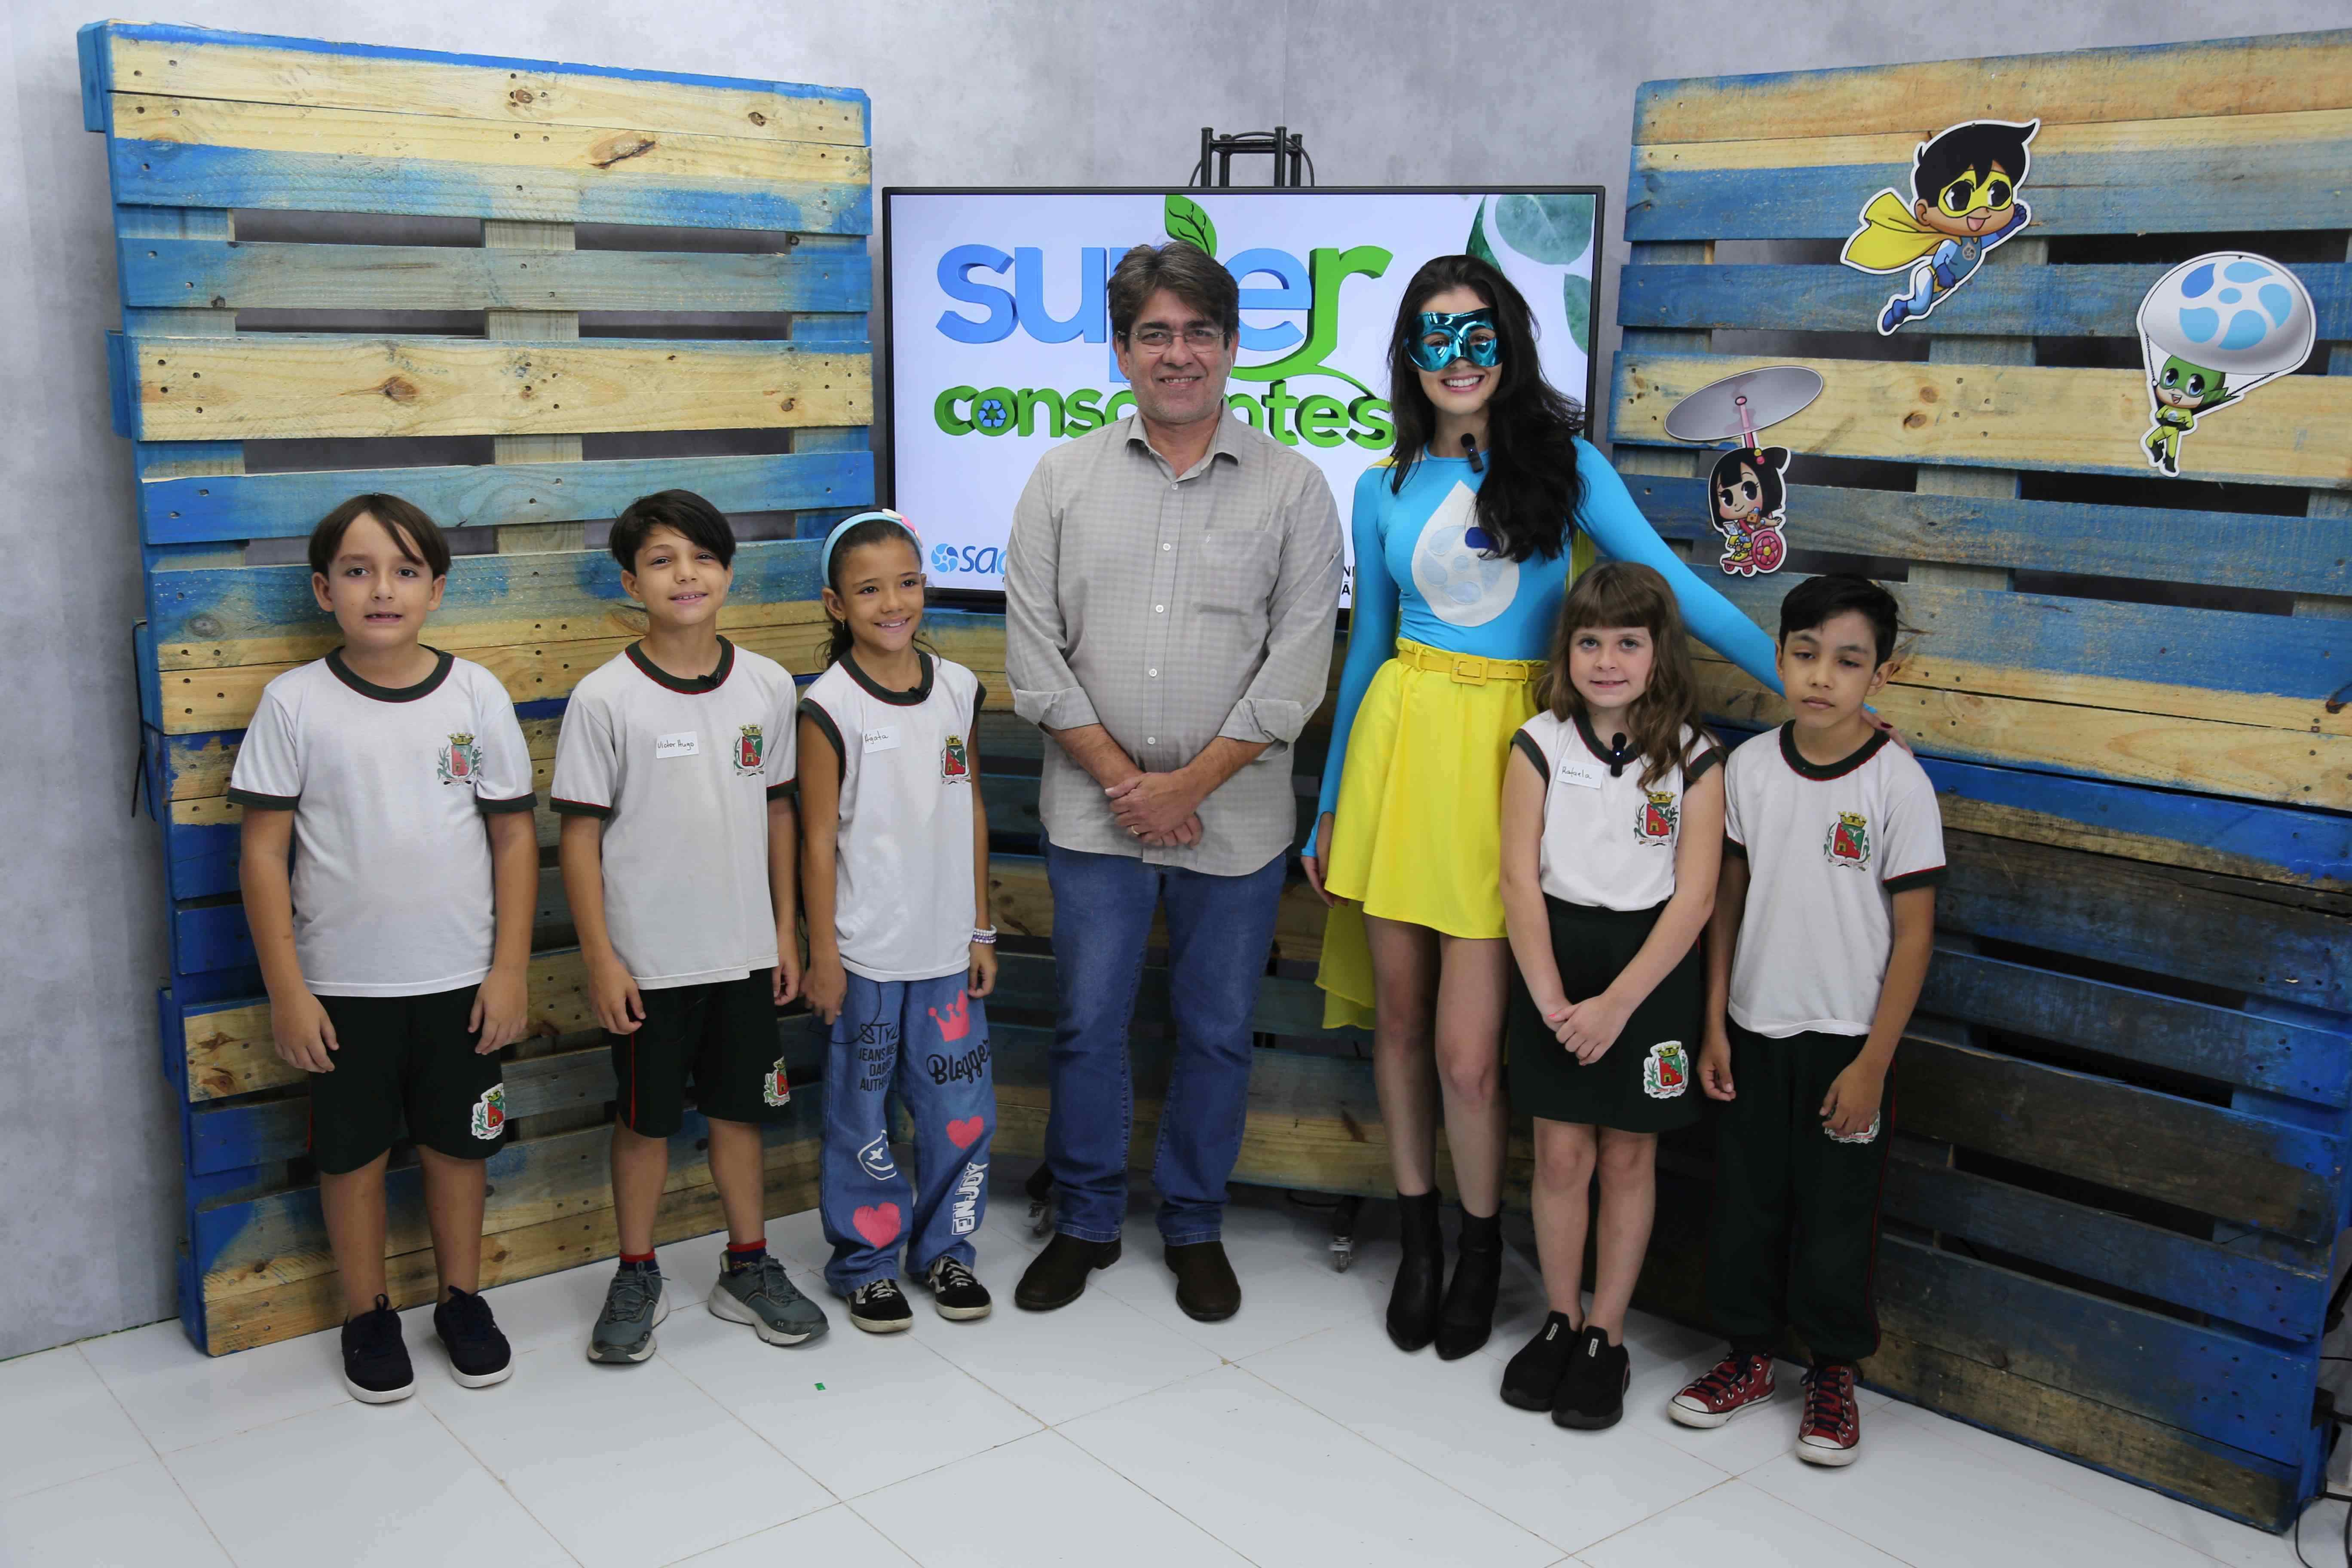 SAAE Barretos lança segunda temporada do programa "Super Conscientes" na TV Câmara Barretos na próxima segunda-feira, dia 15